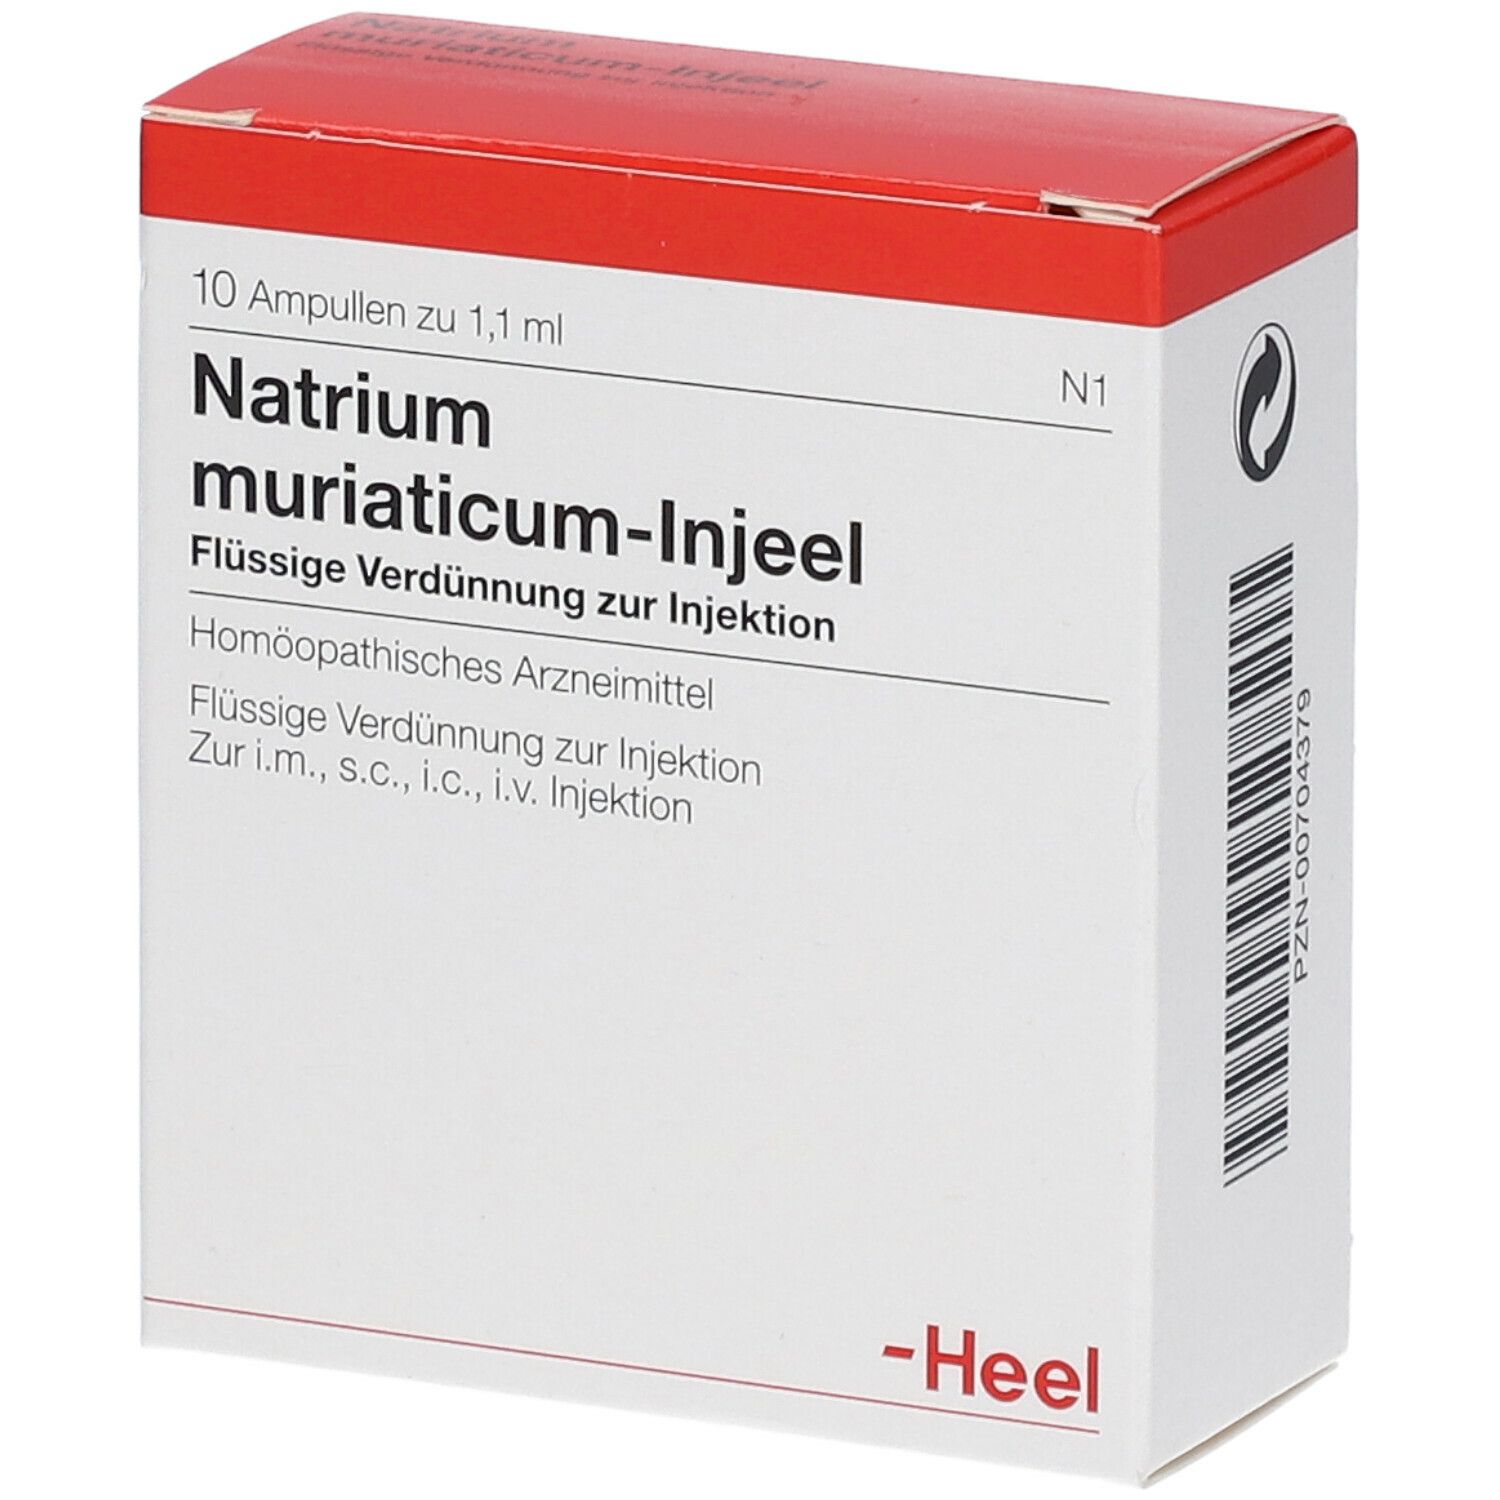 Natrium muriaticum-Injeel® Ampullen